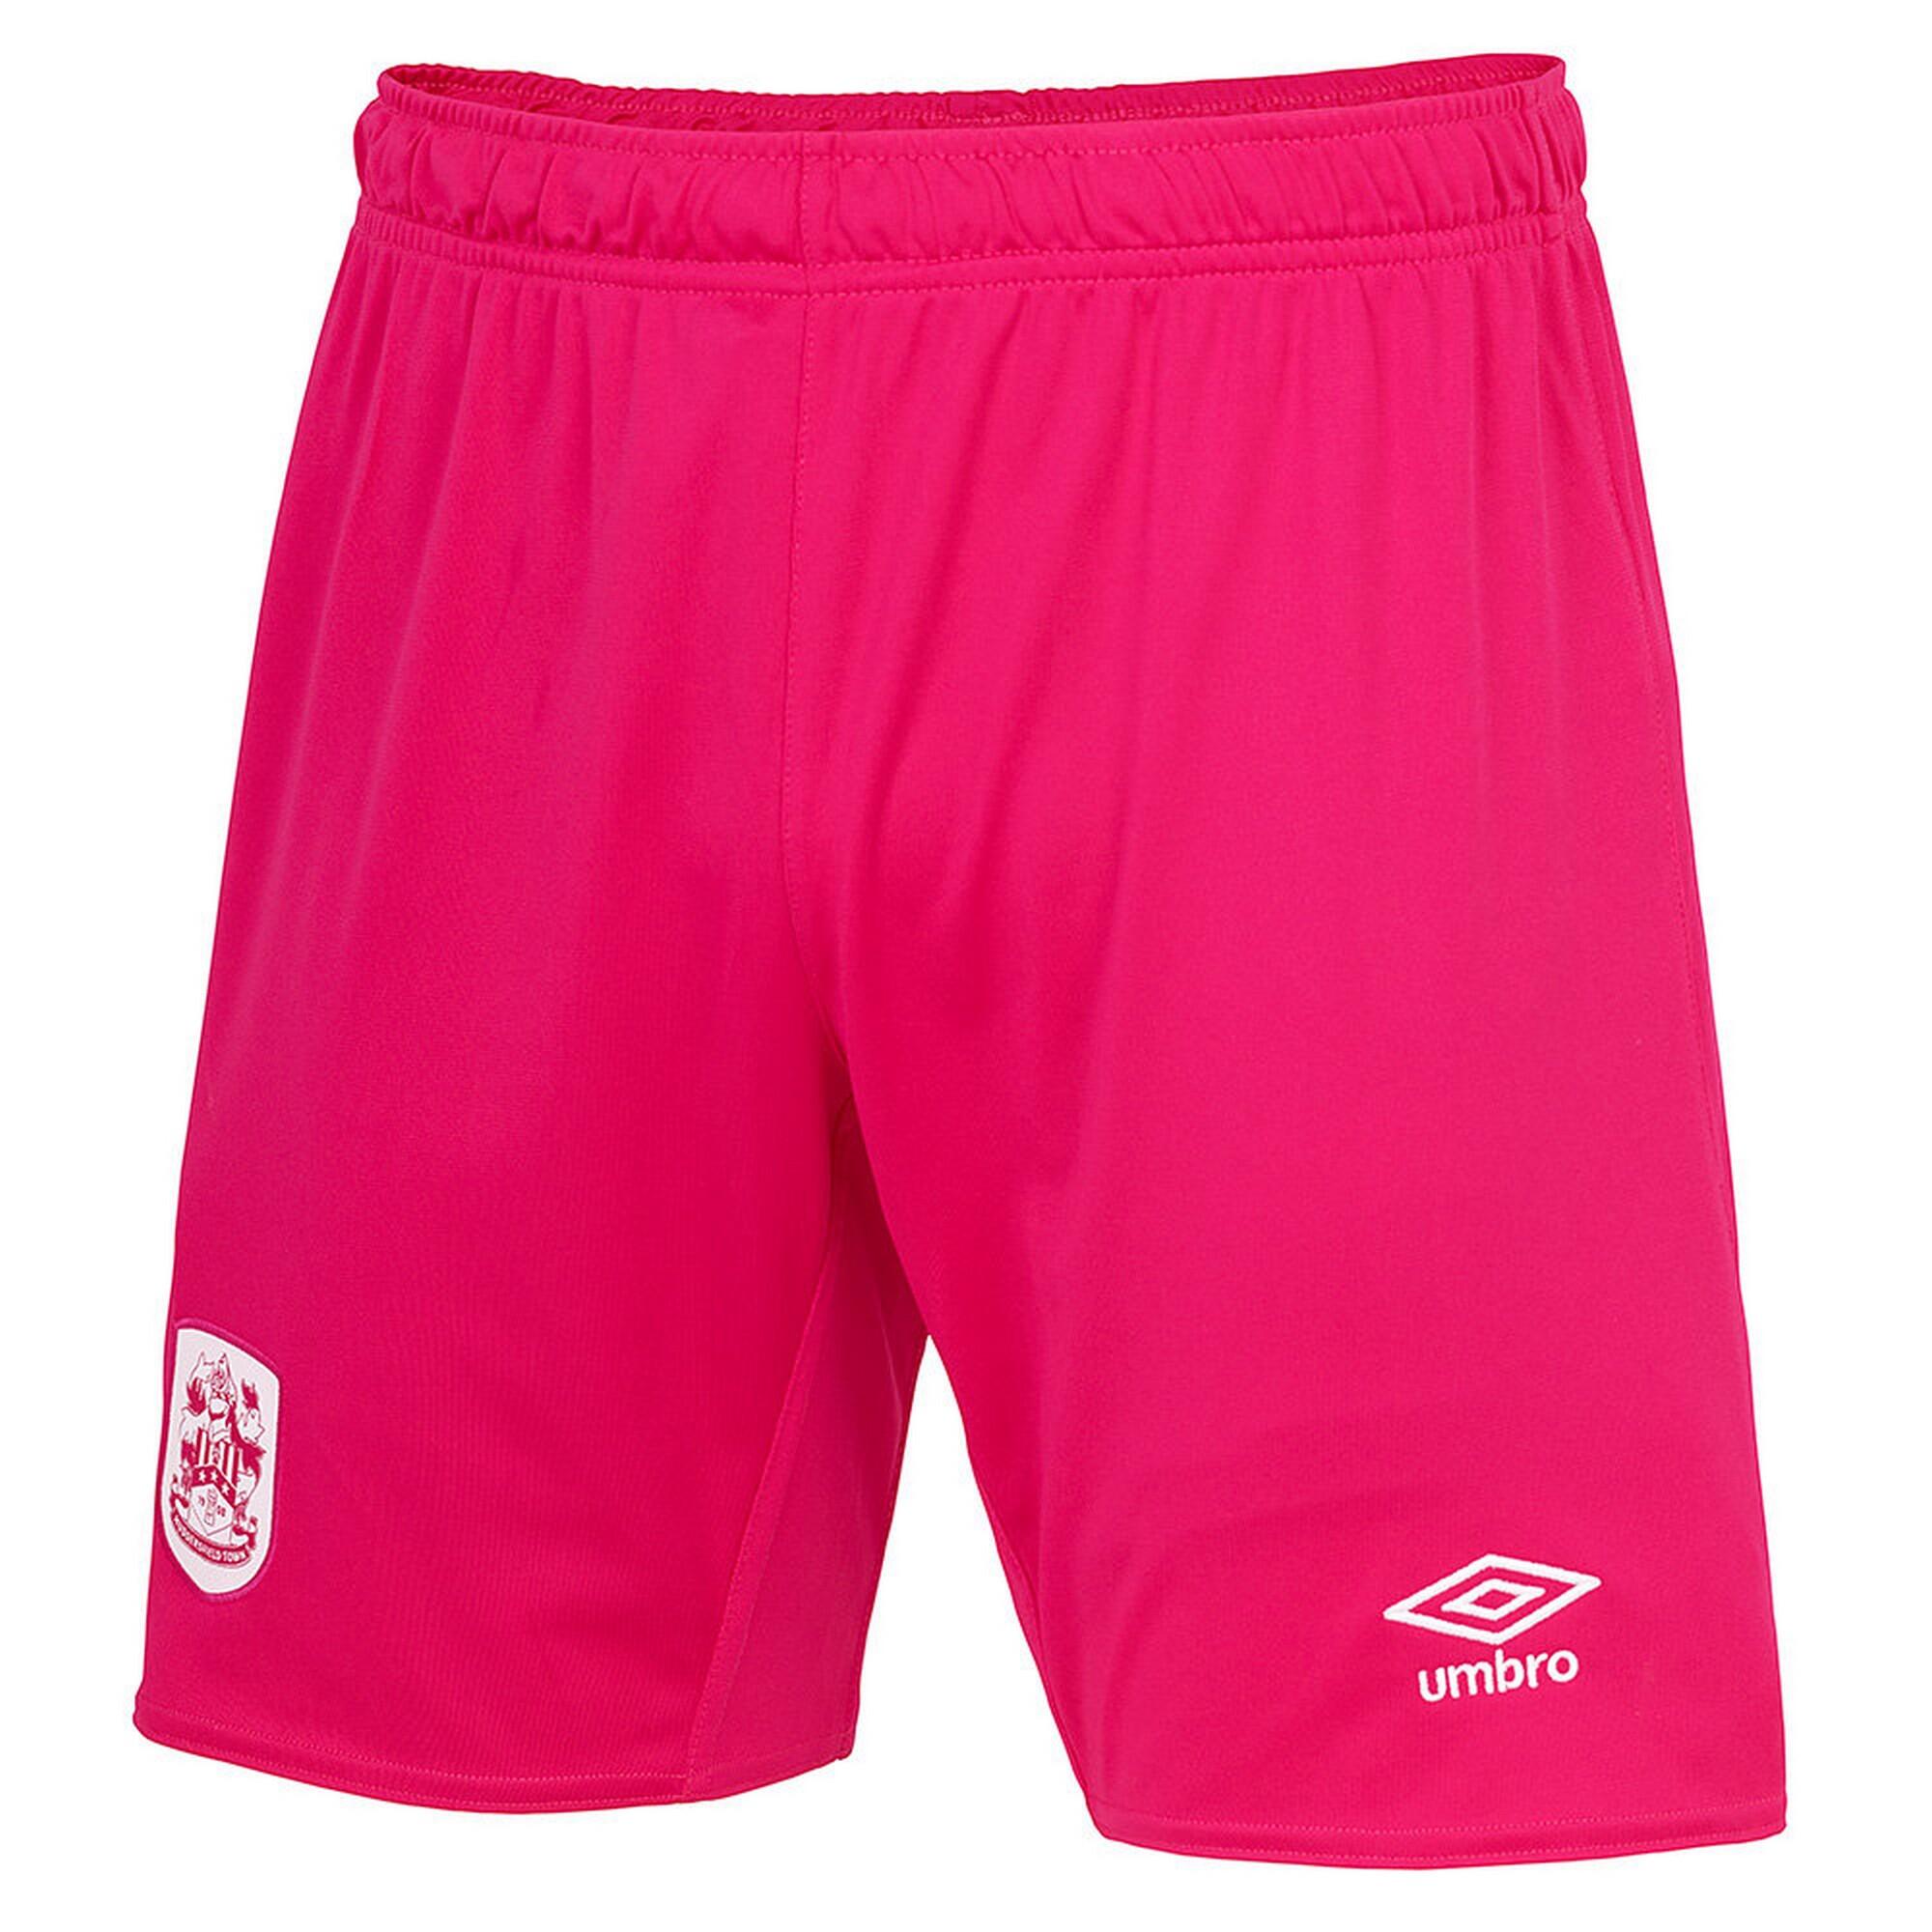 UMBRO Huddersfield Town AFC Mens 22/23 Third Shorts (Deep Pink)